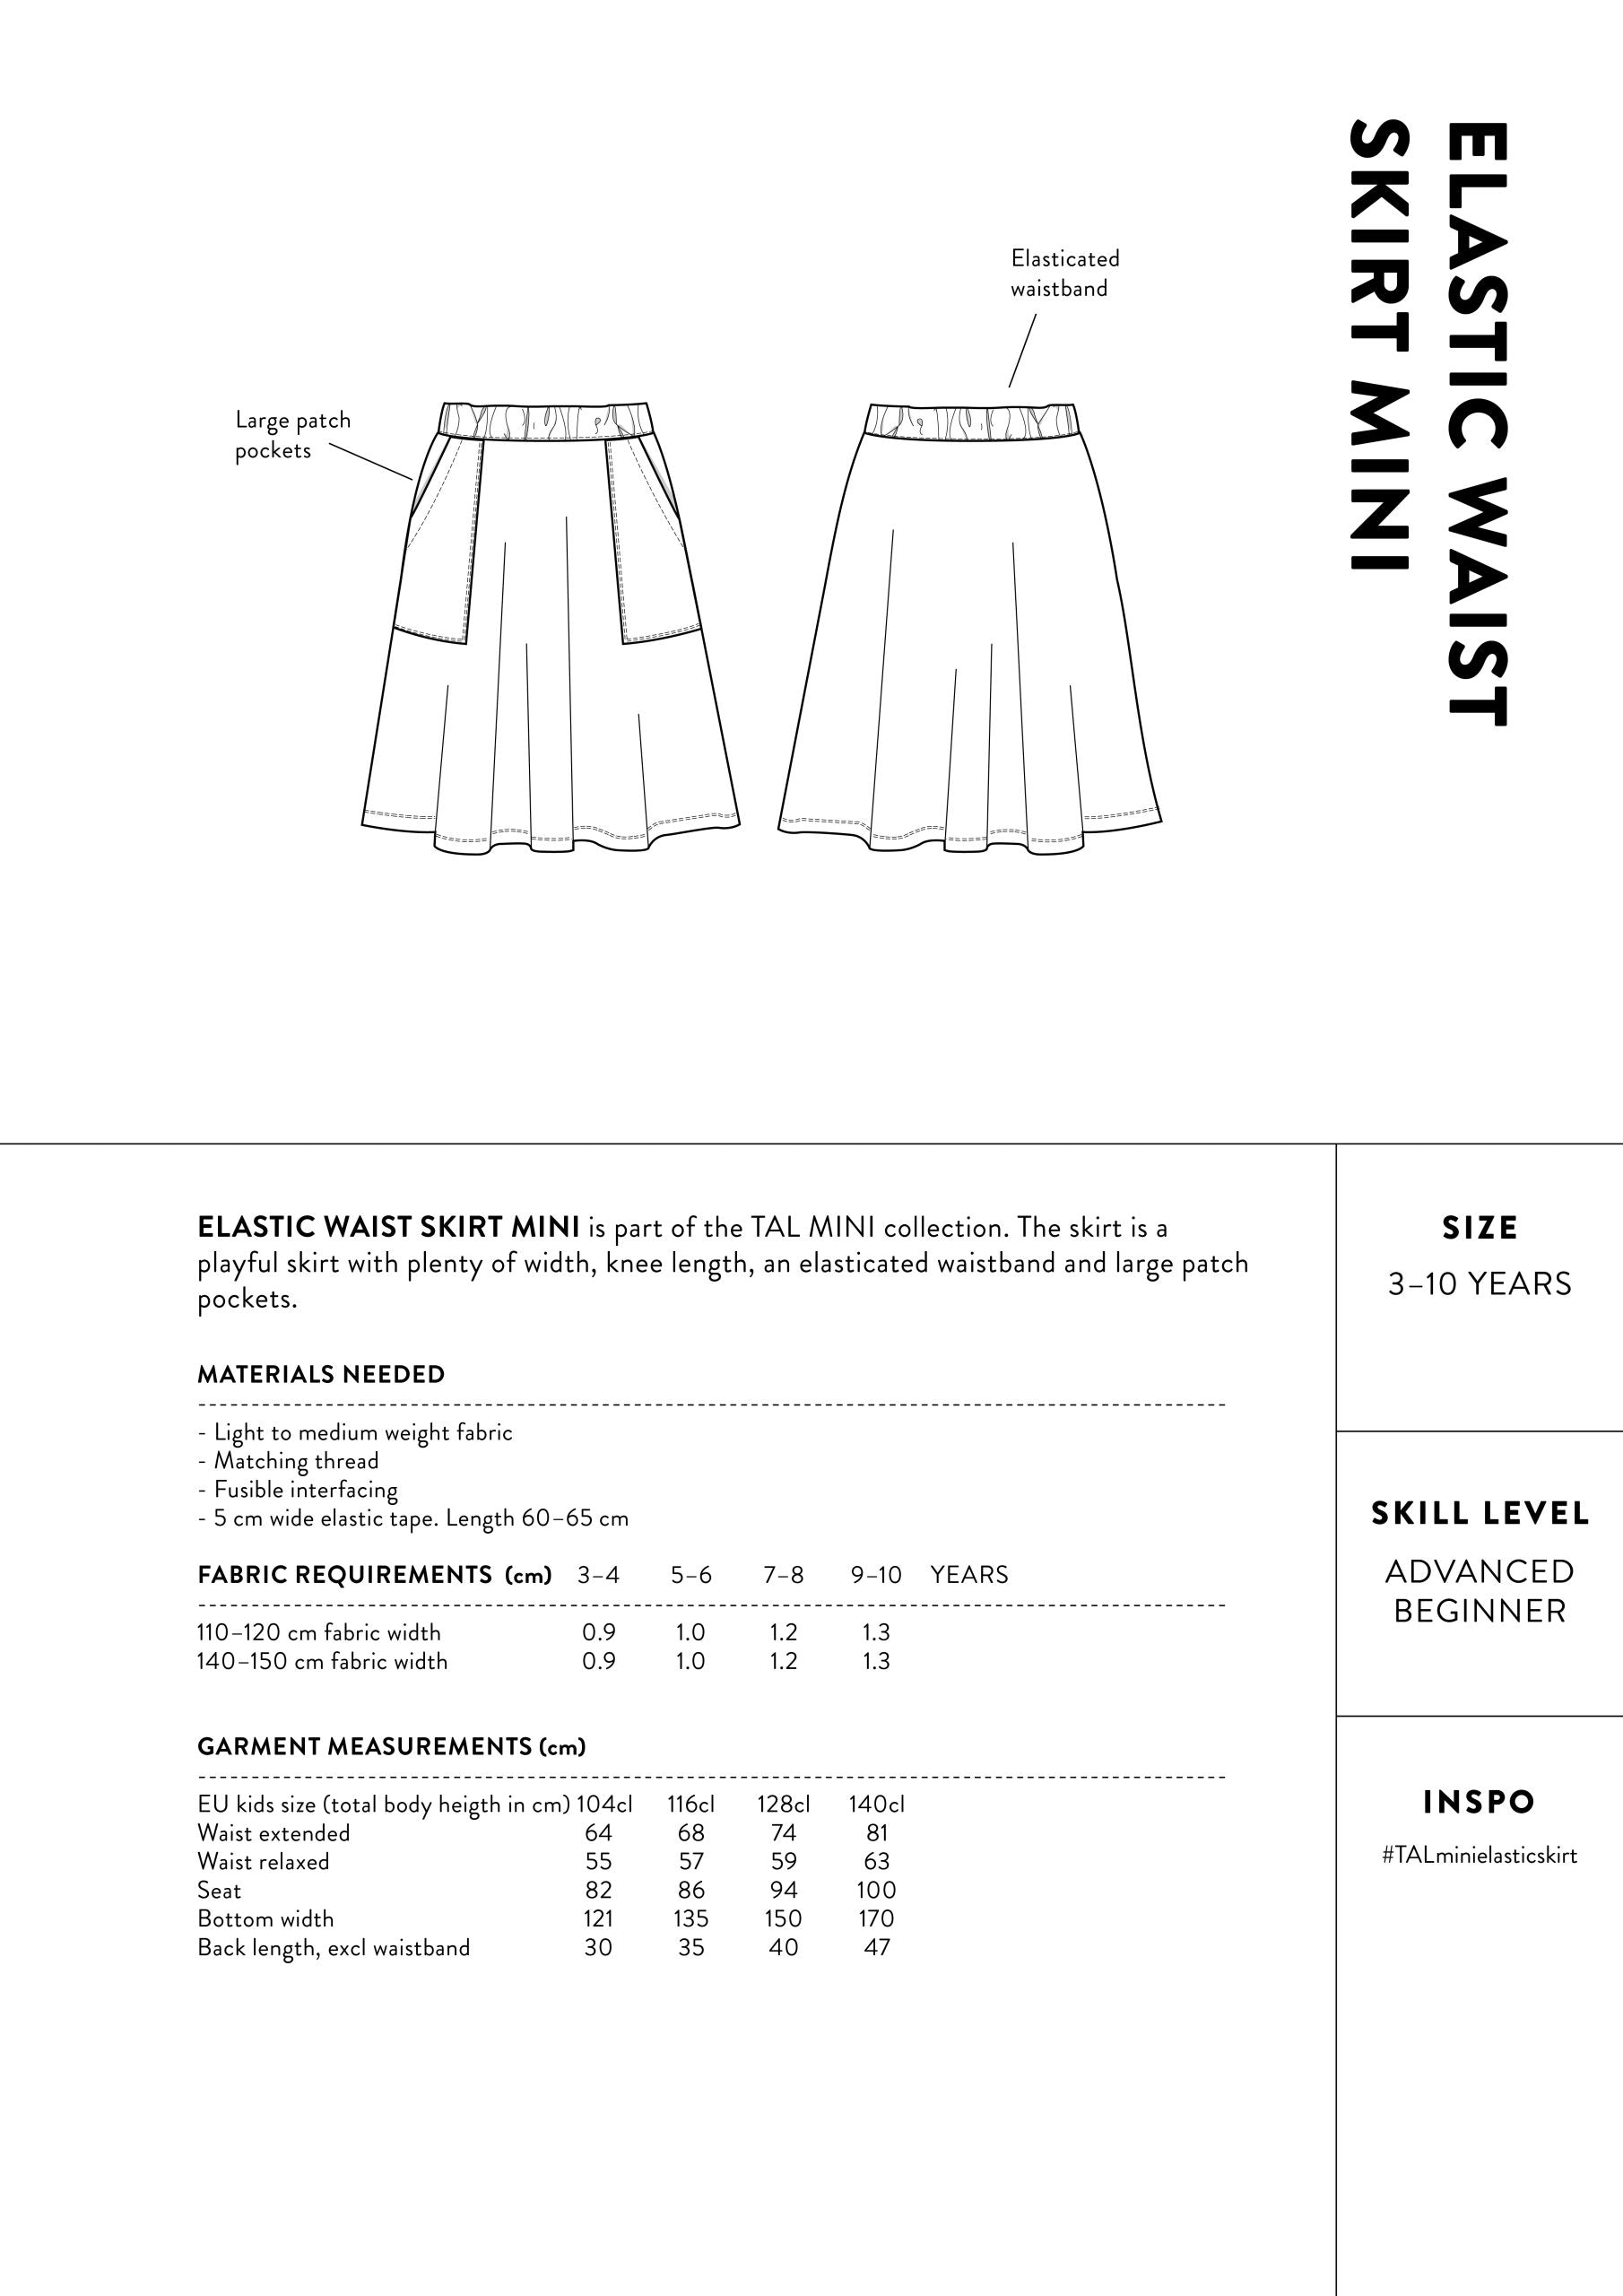 The Assembly Line Mini Elastic Waist Skirt